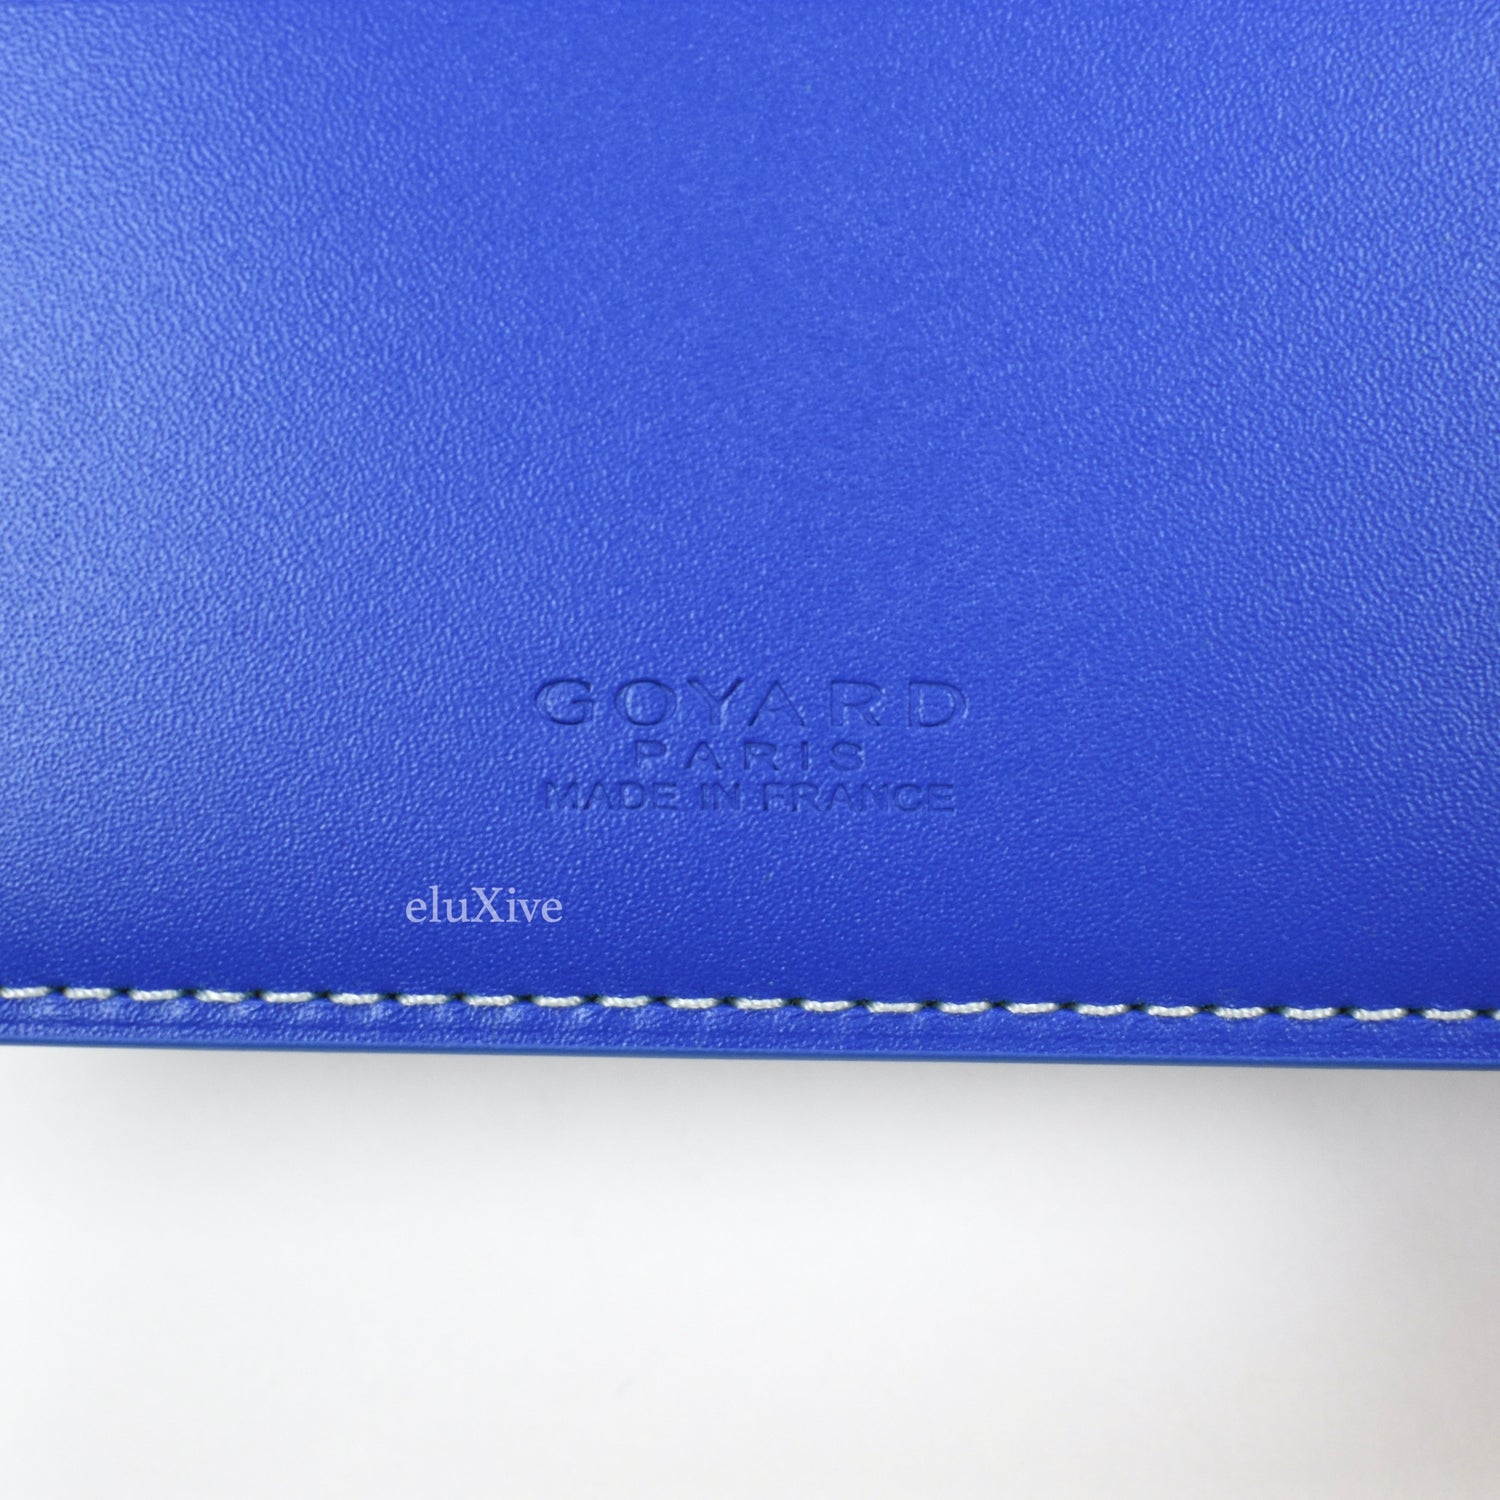 Goyard - Saint-Pierre Card Wallet - 3 Month Review! Sky Blue! 